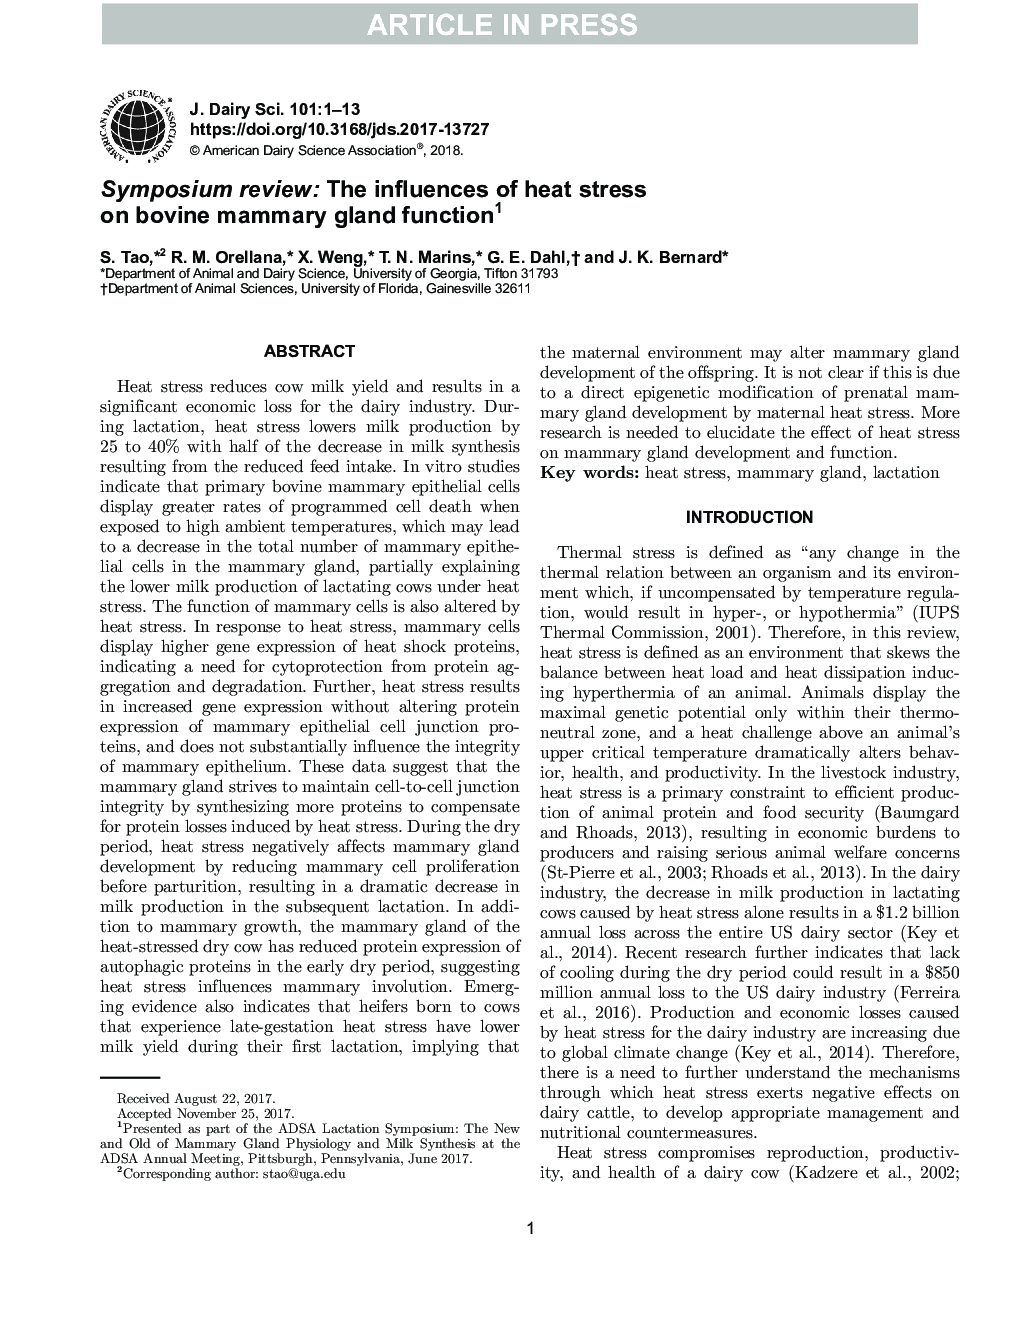 بررسی سمپوزیوم: تأثیر تنش گرمائی بر عملکرد ژن شیری گاو 1 